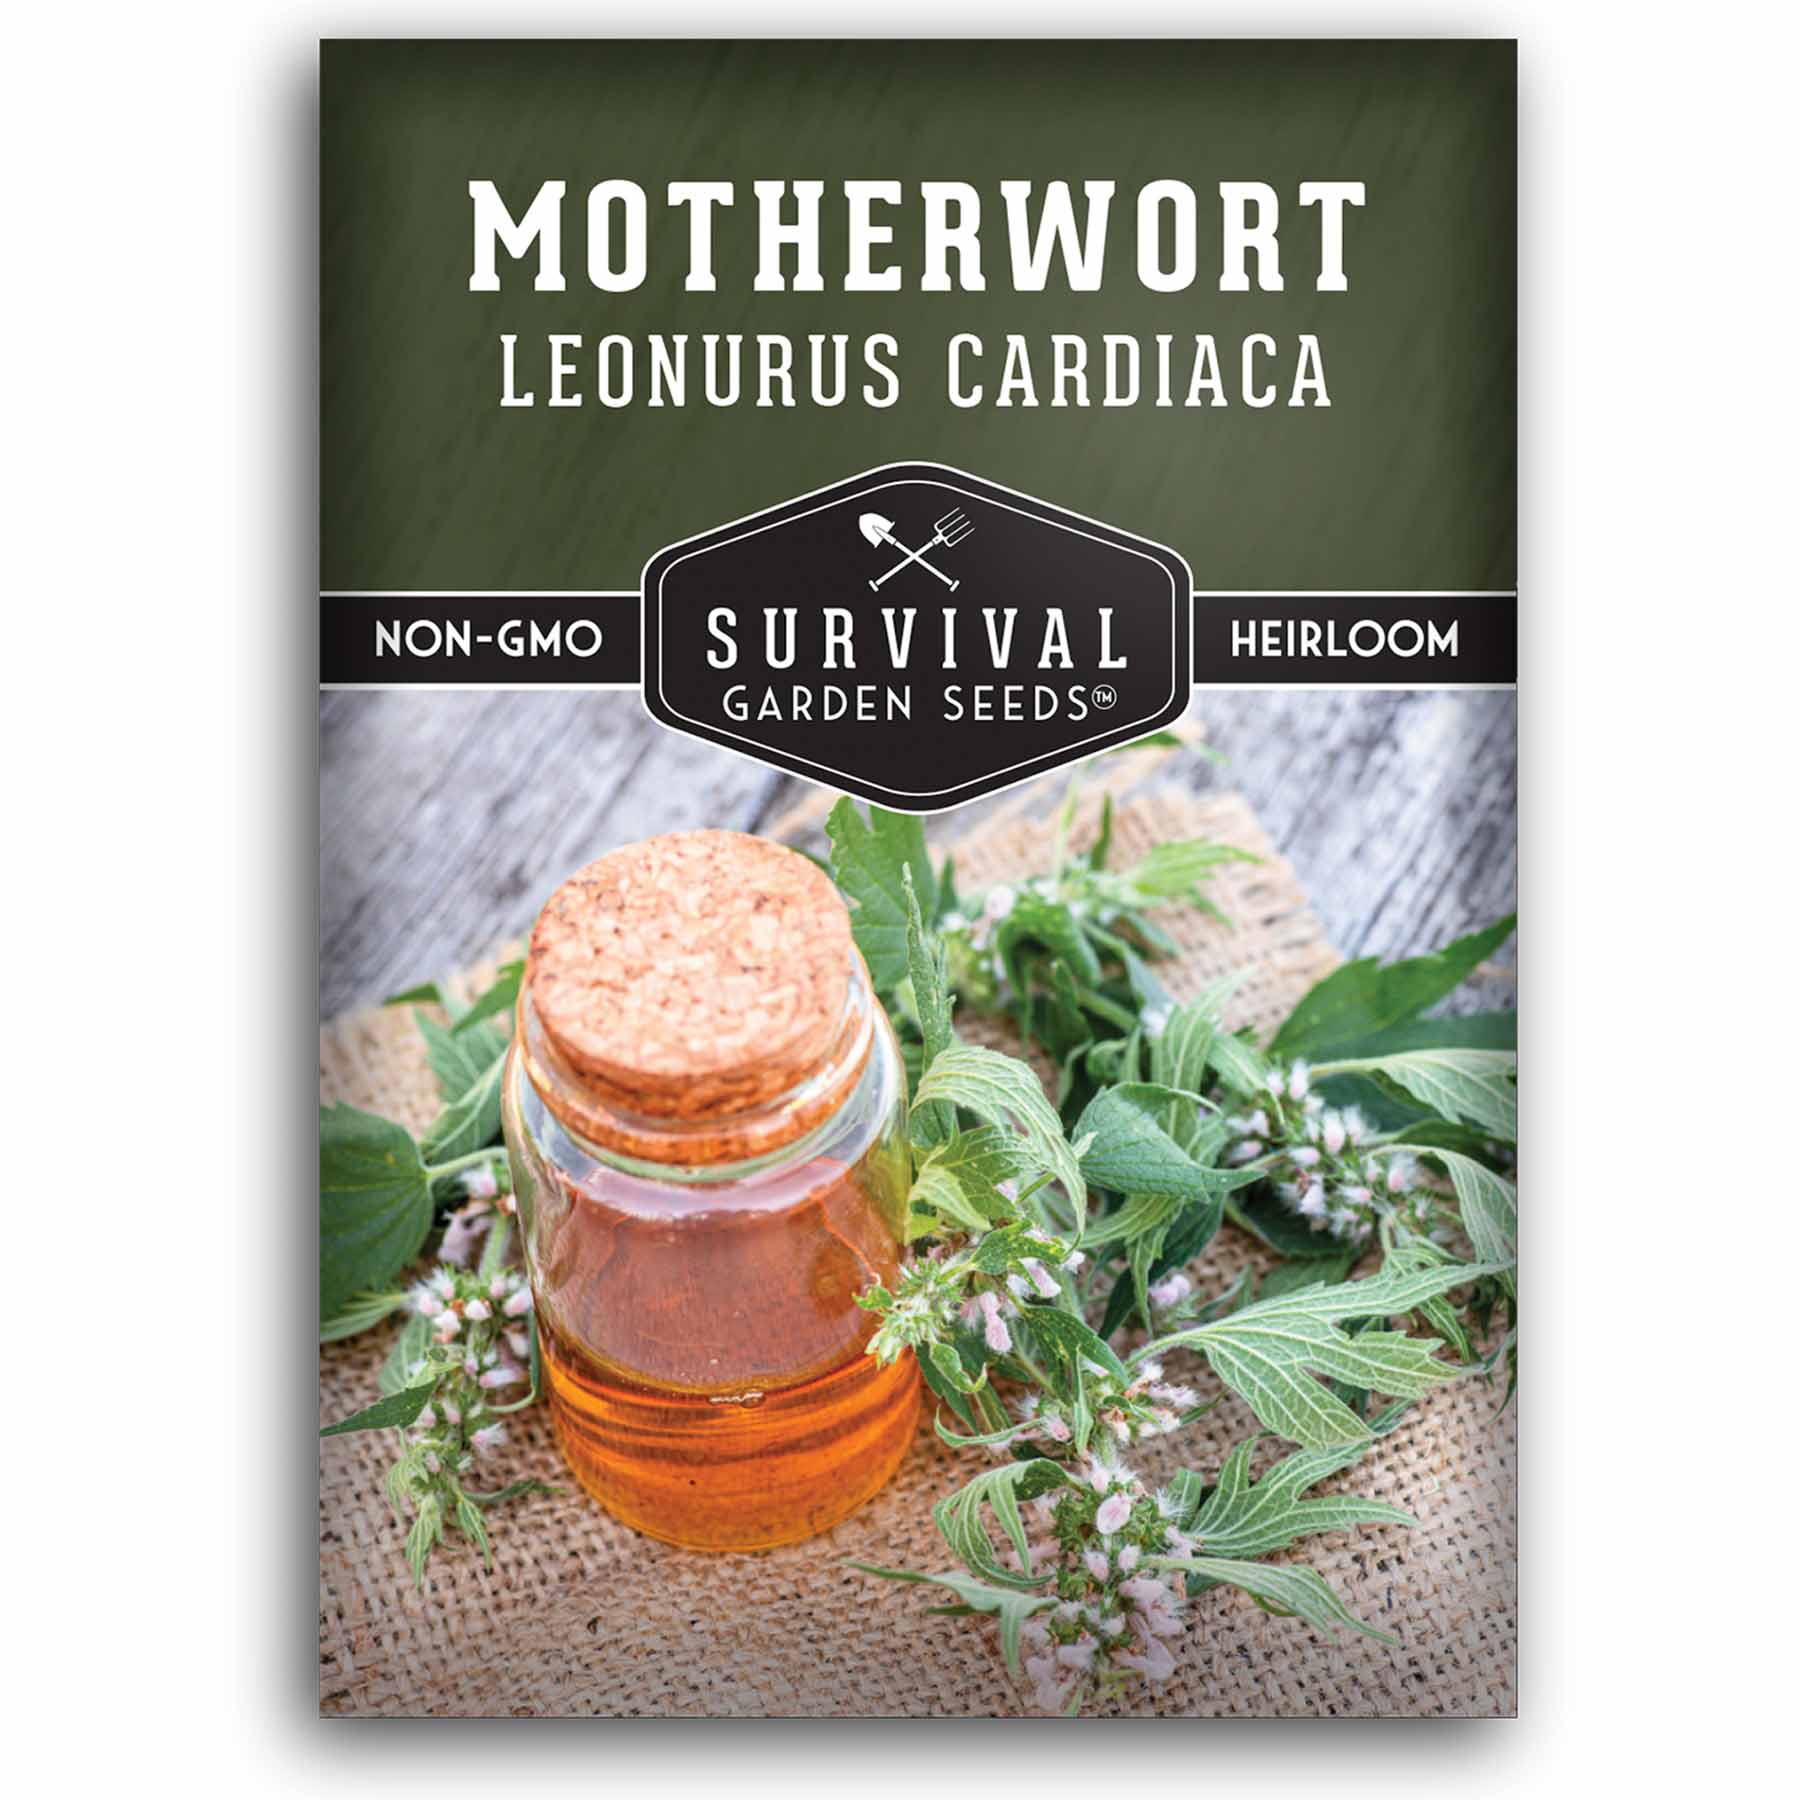 1 packet of Motherwort seeds